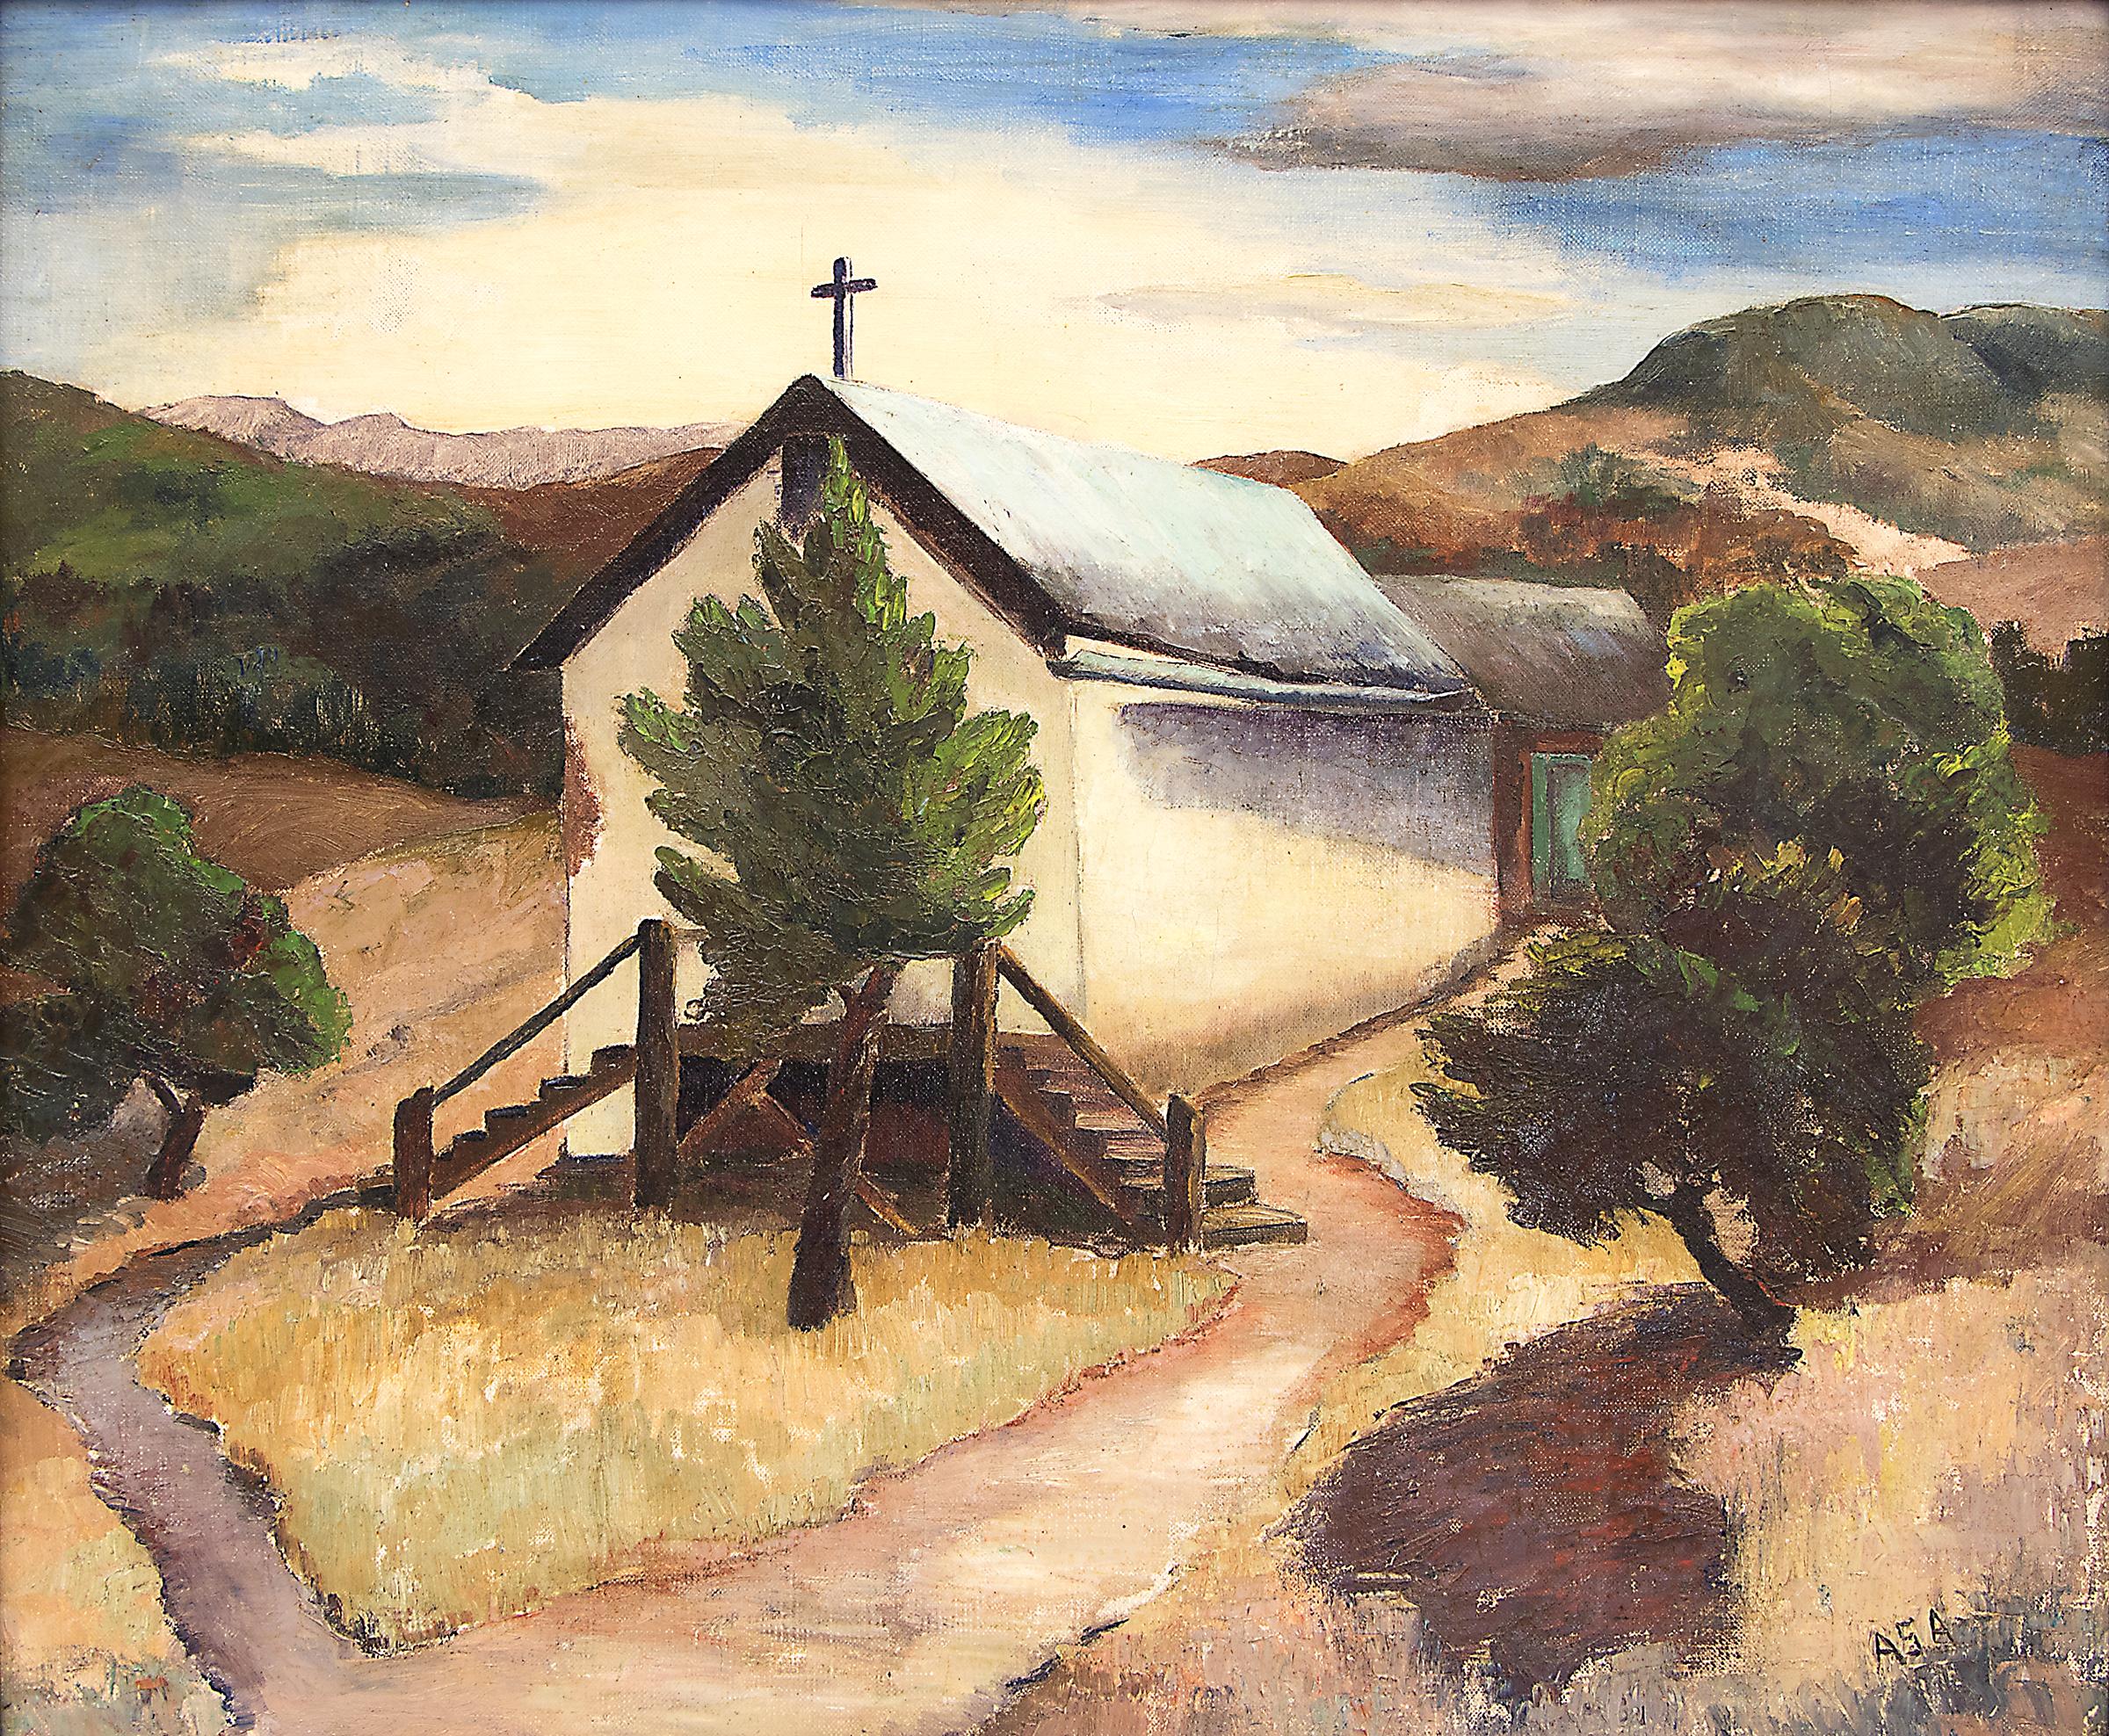 High Rolls, New Mexico, Südwestlandschaft, Wüstenkirche mit Bäumen, 1940er Jahre – Painting von Andersen, Andreas Storrs